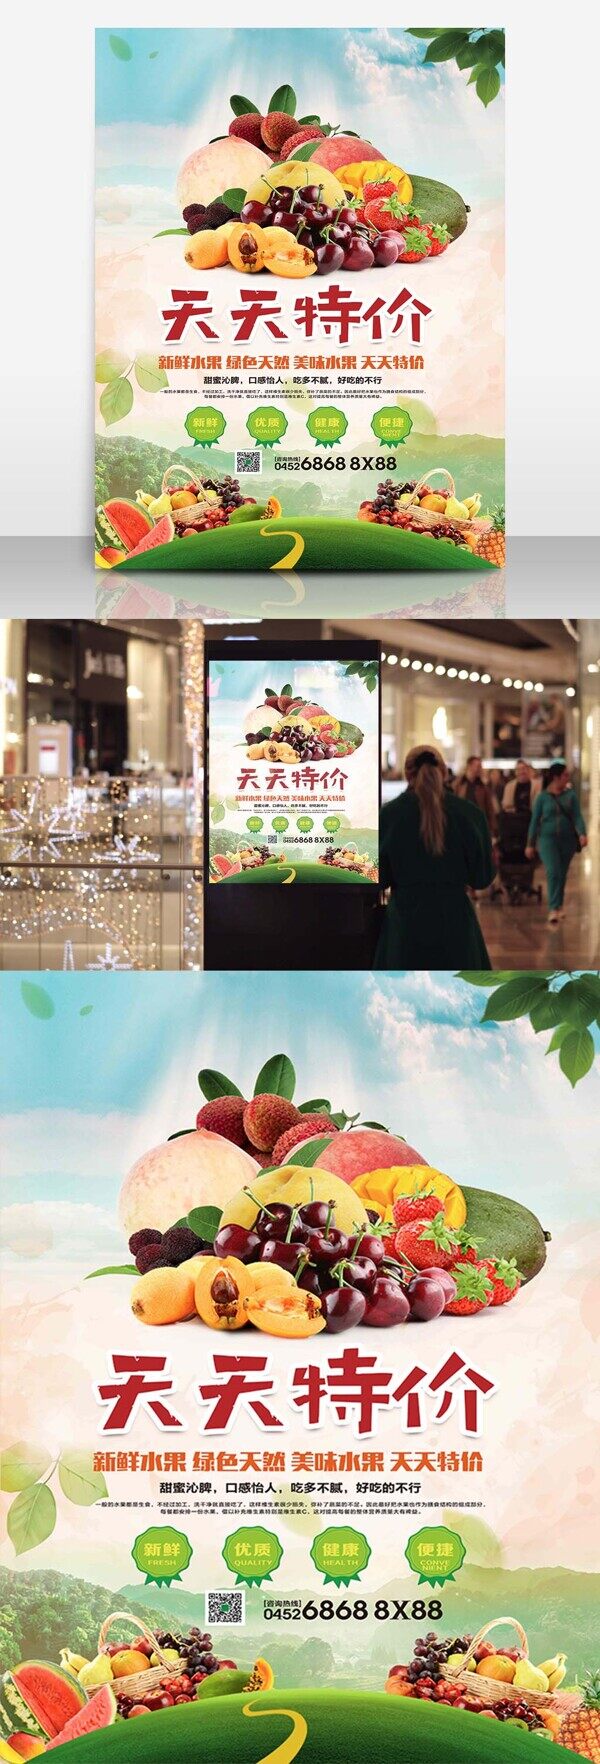 夏季水果天天特价水果店促销海报